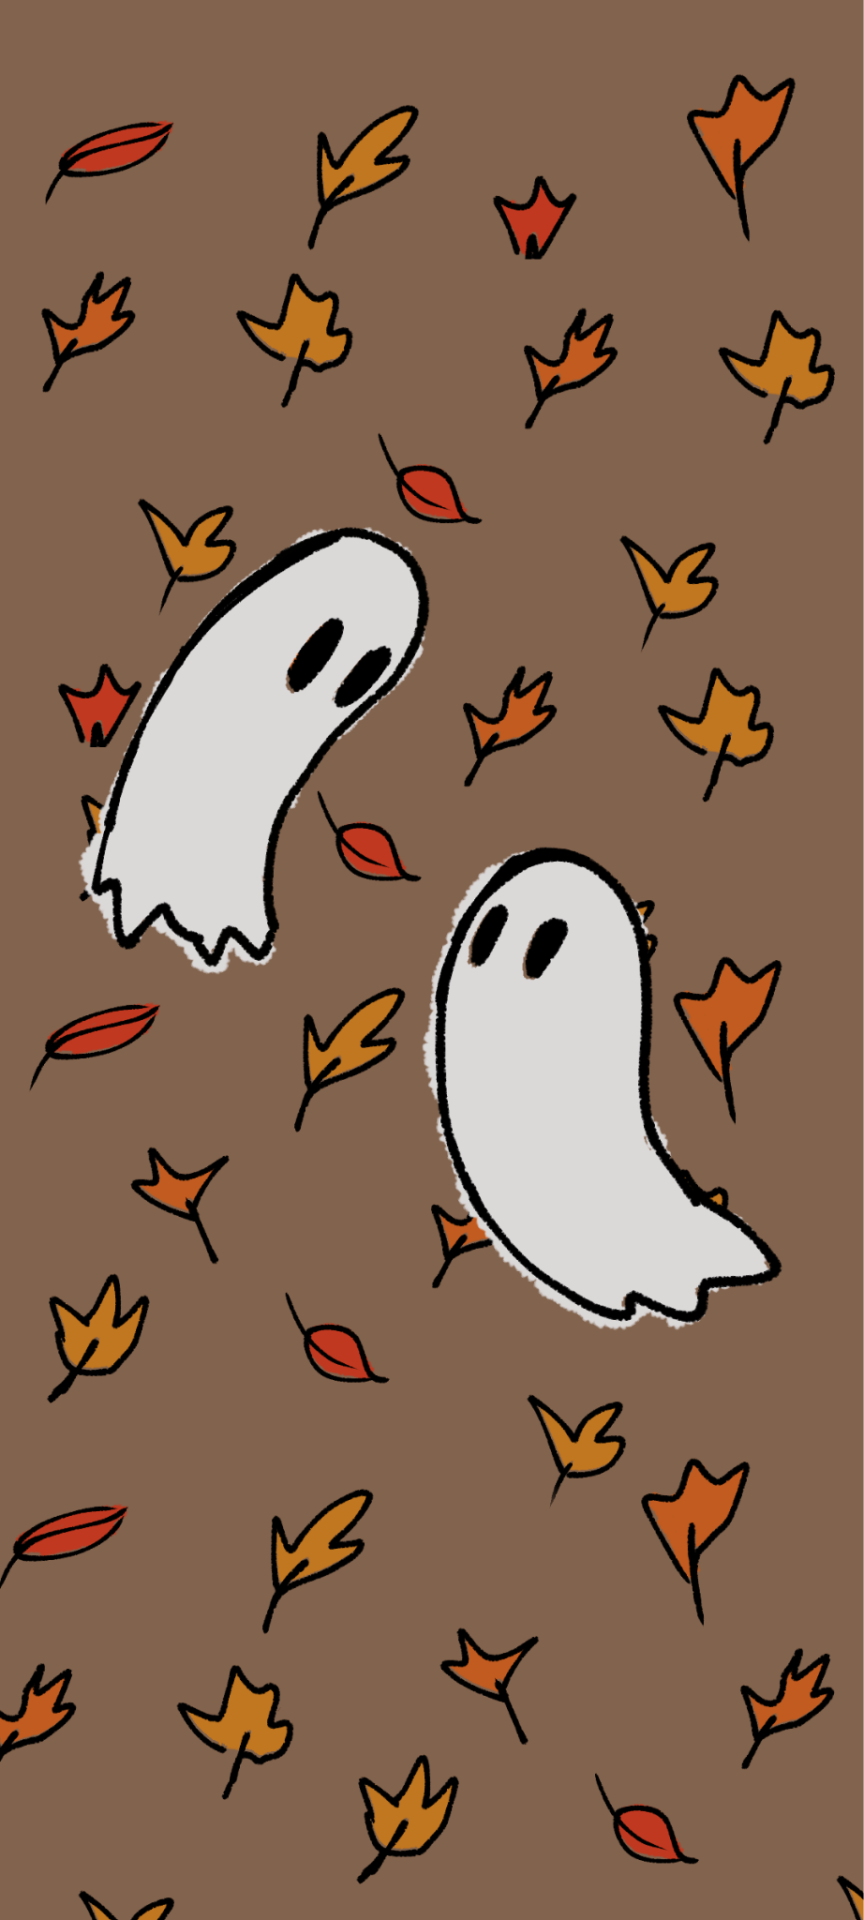 Cute GhostWallpapers